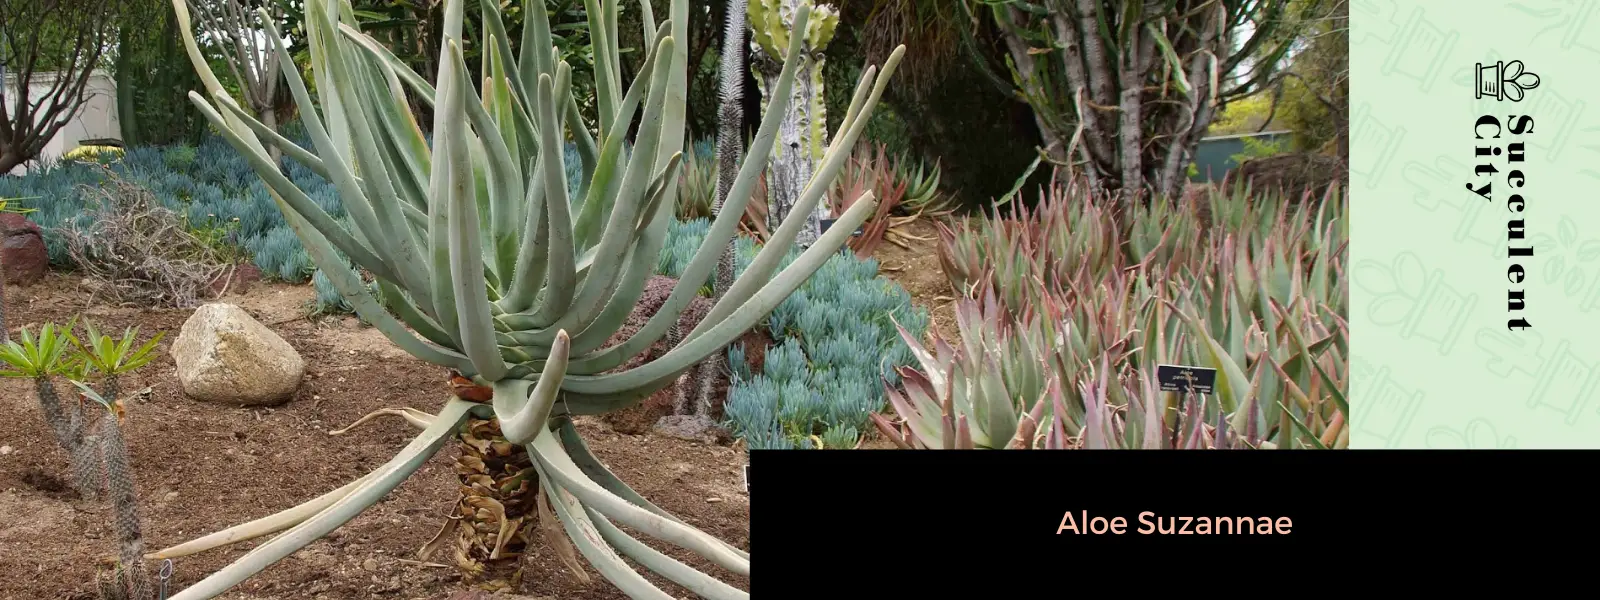 Aloe Suzannae – El árbol de aloe malgache